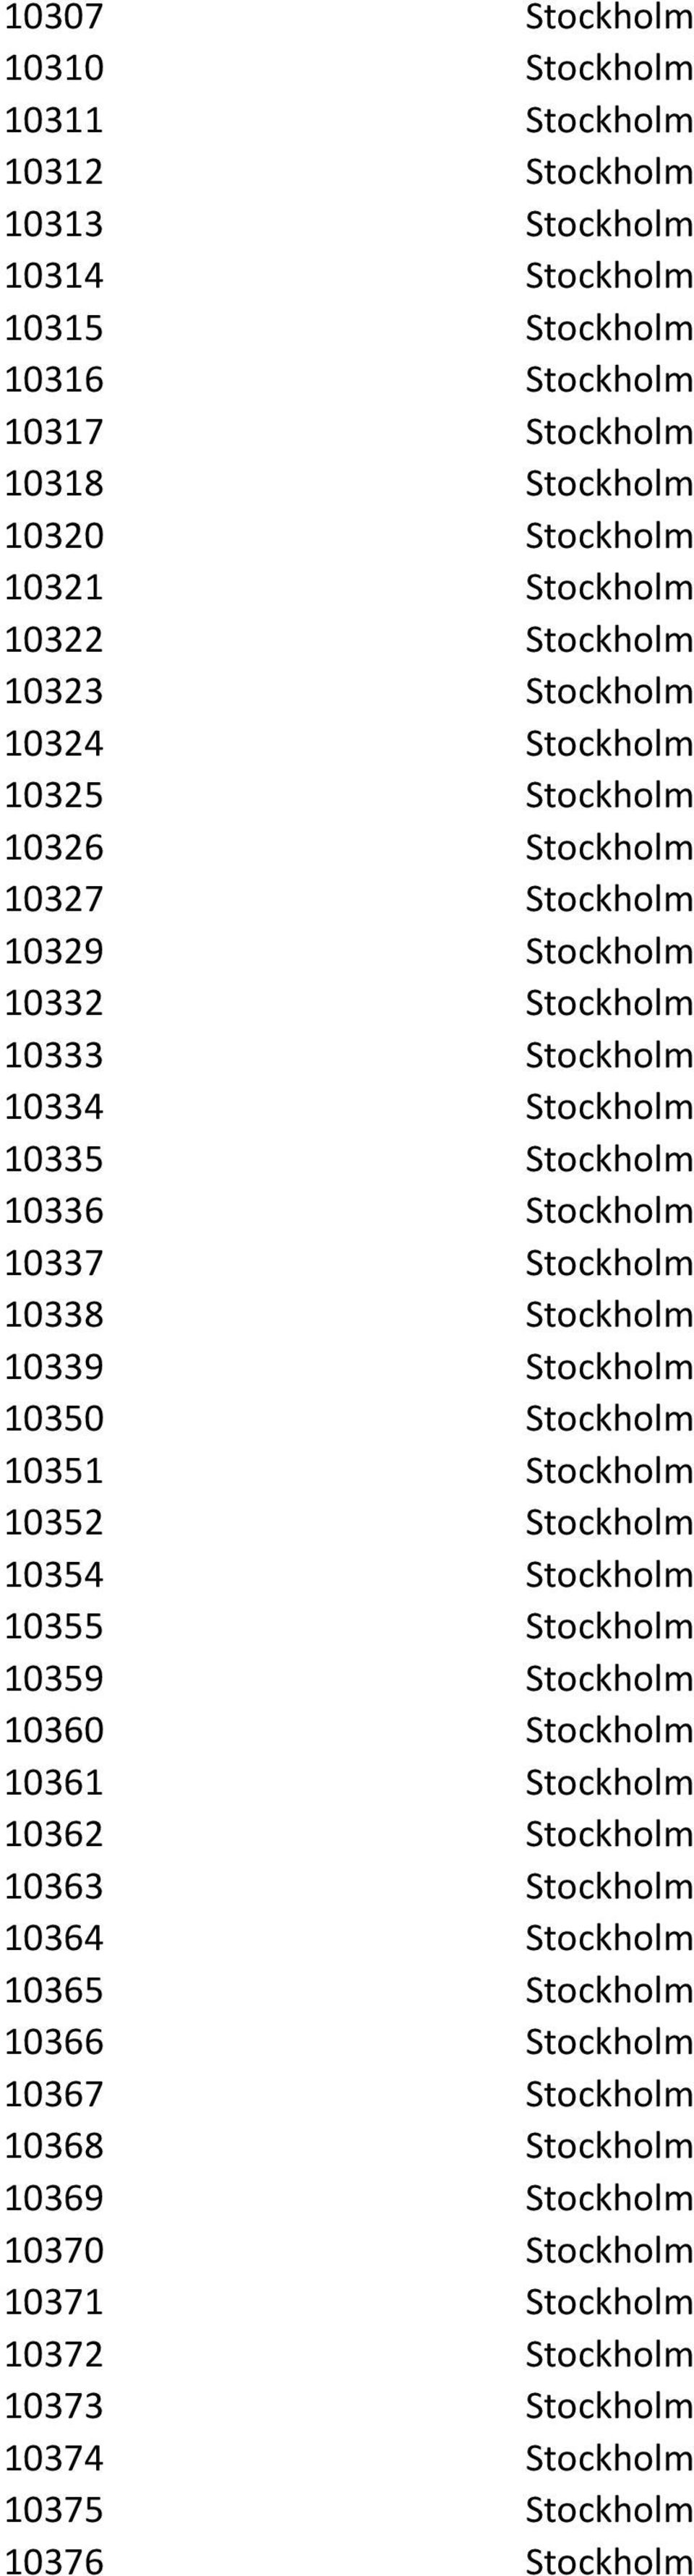 Stockholm 10338 Stockholm 10339 Stockholm 10350 Stockholm 10351 Stockholm 10352 Stockholm 10354 Stockholm 10355 Stockholm 10359 Stockholm 10360 Stockholm 10361 Stockholm 10362 Stockholm 10363